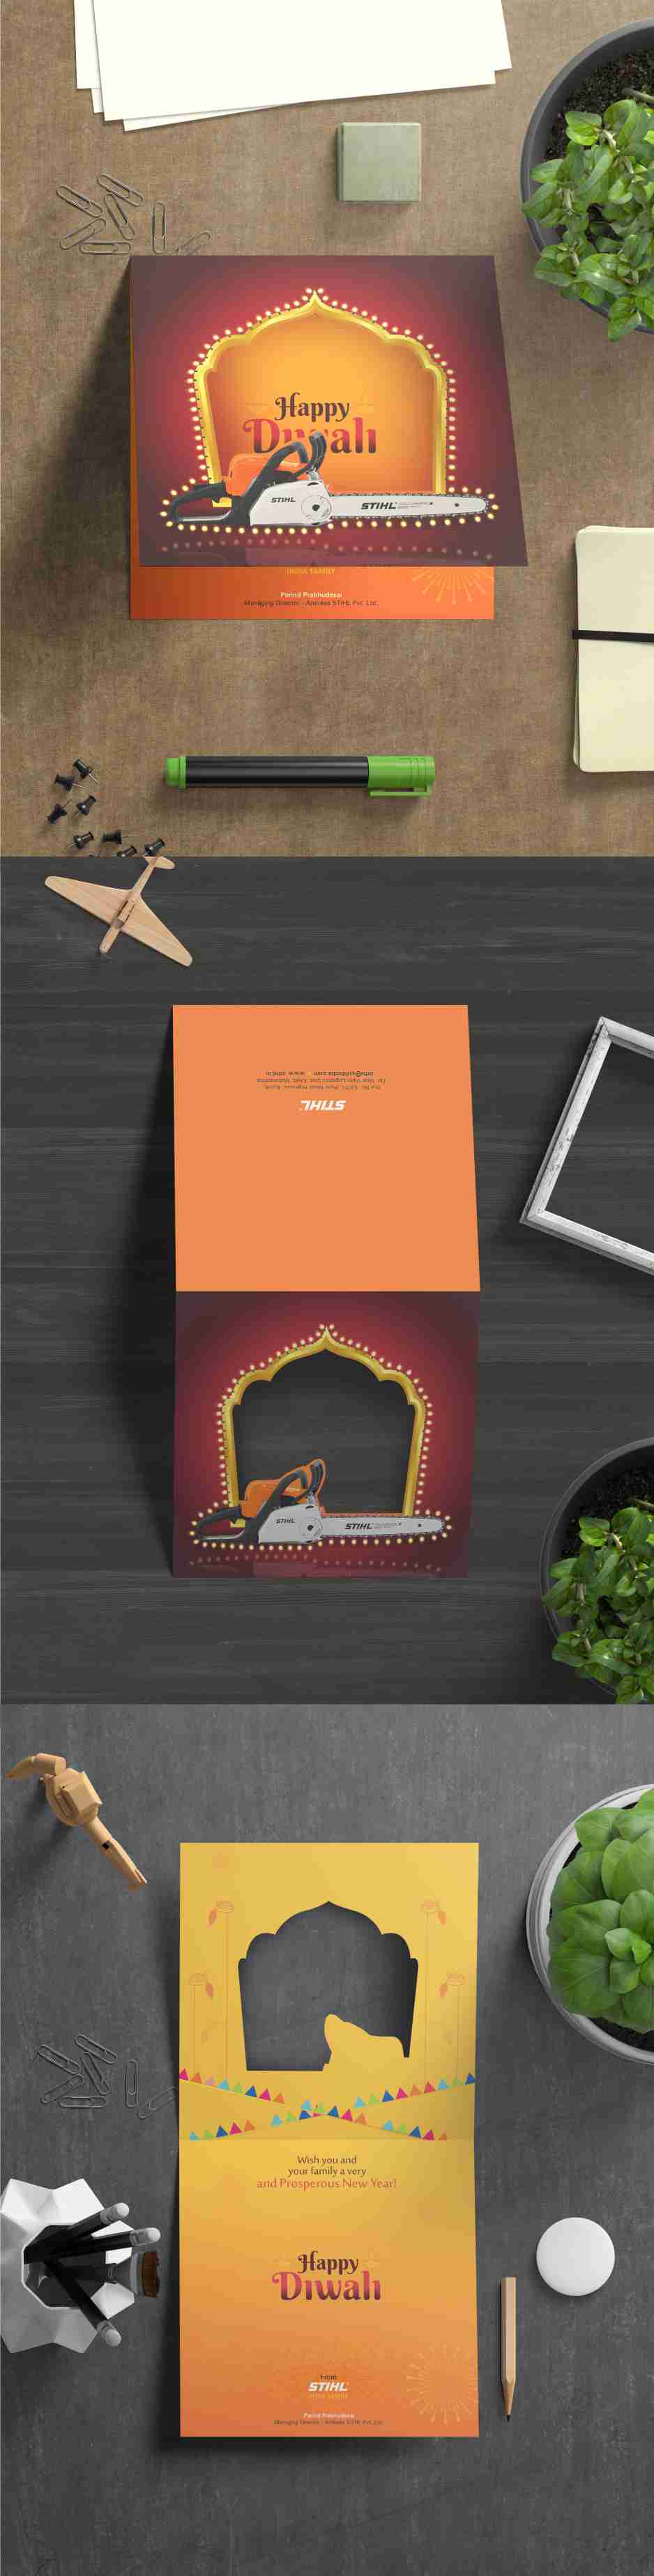 Diwali Card Designing